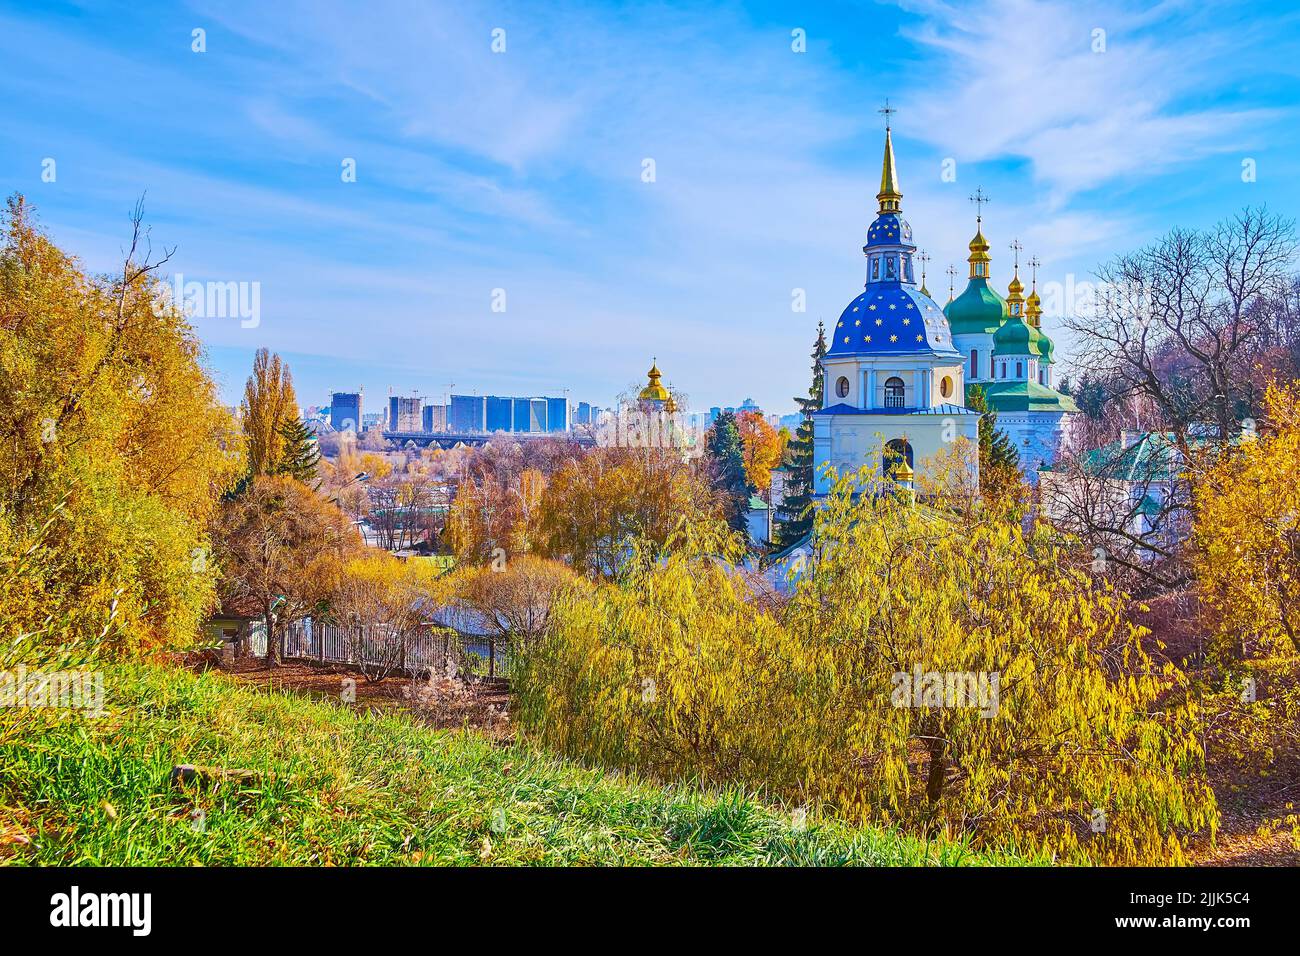 La colina en el jardín botánico de Kiev observa las cúpulas azules y verdes brillantes del monasterio de Vydubychi, visto detrás de los sauces amarillos del otoño, Kiev, Ukrain Foto de stock